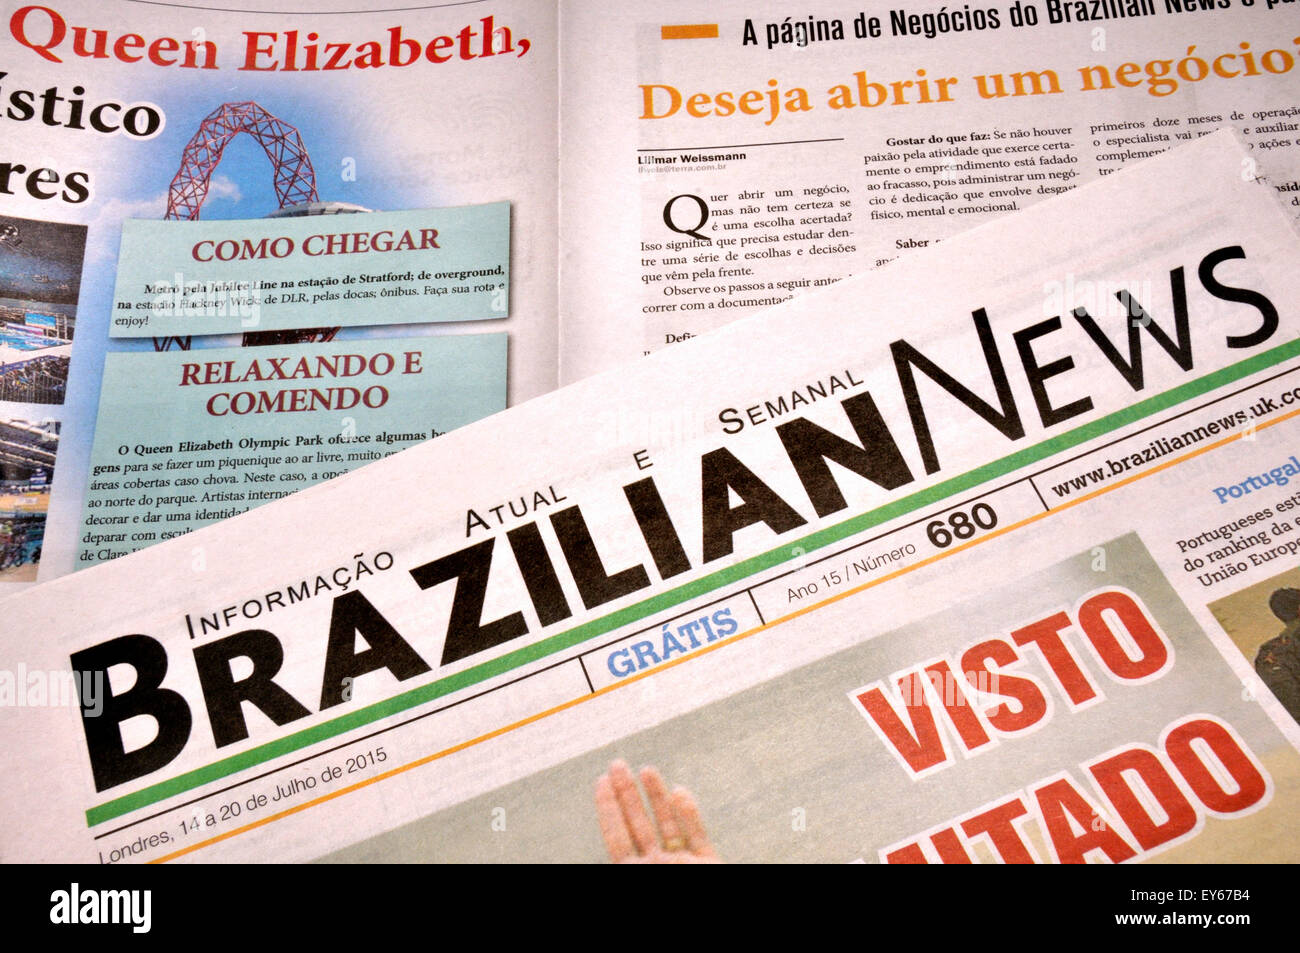 Brasilianische News - kostenlose Wochenzeitung in London (Juli 2015) erhältlich Stockfoto